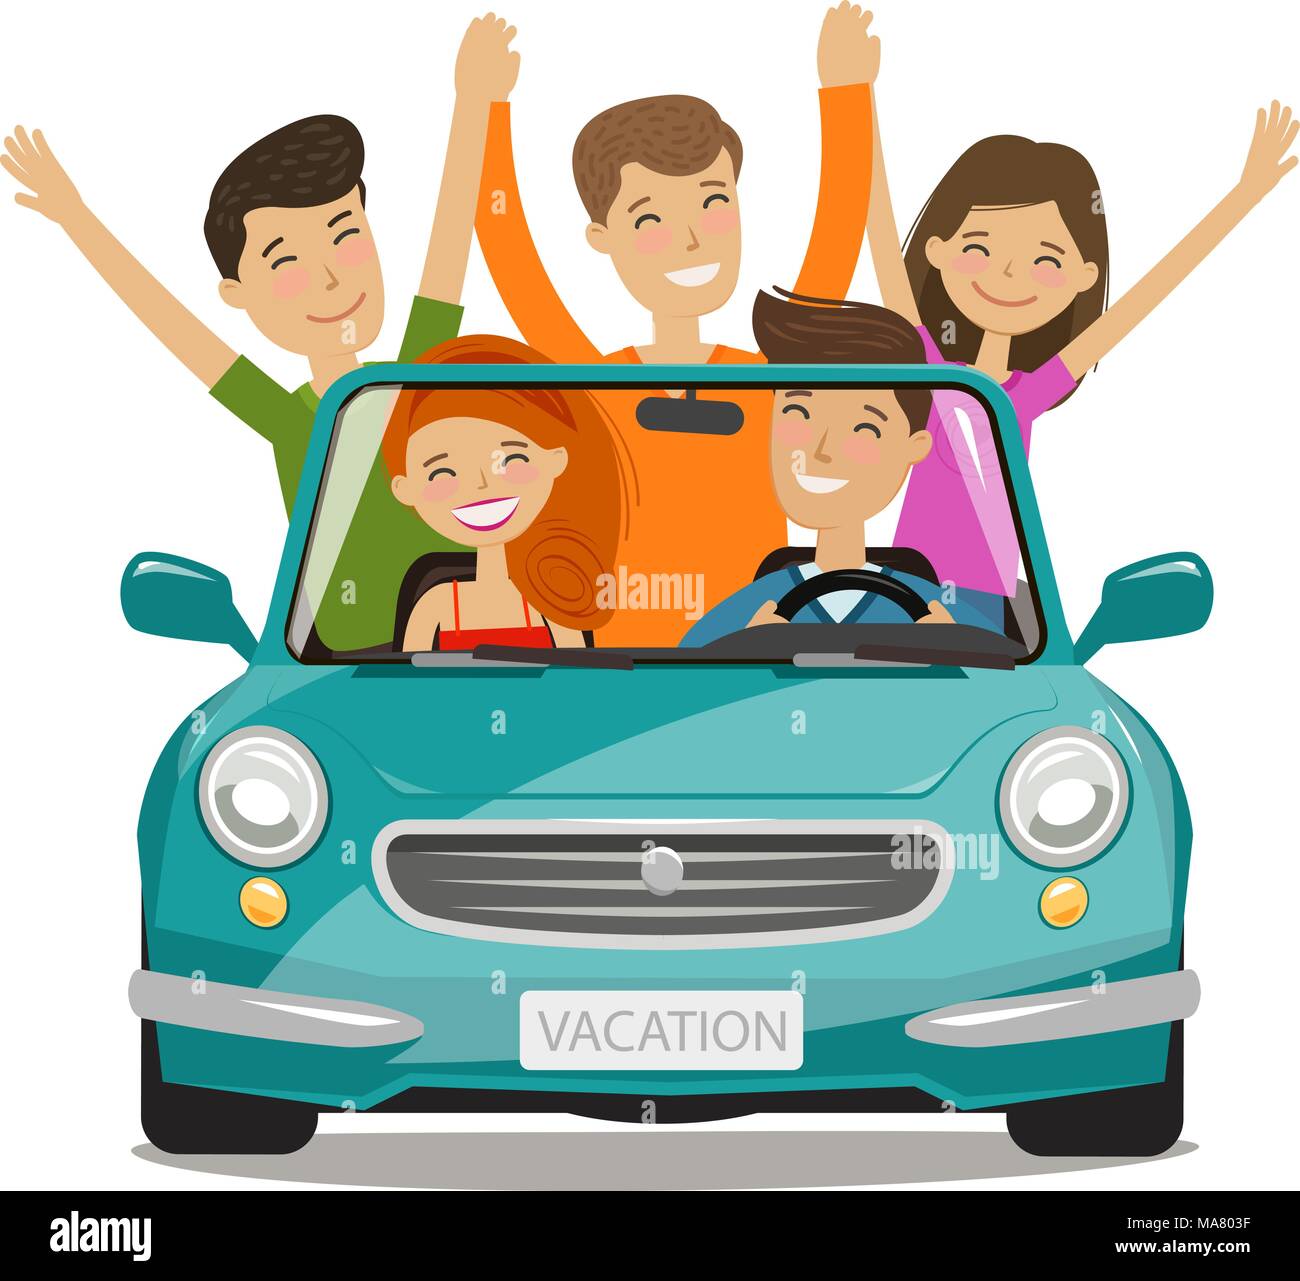 Urlaub, Reise Konzept. Glückliche junge Leute oder Freunde sind mit dem  Auto unterwegs. Cartoon Vector Illustration Stock-Vektorgrafik - Alamy